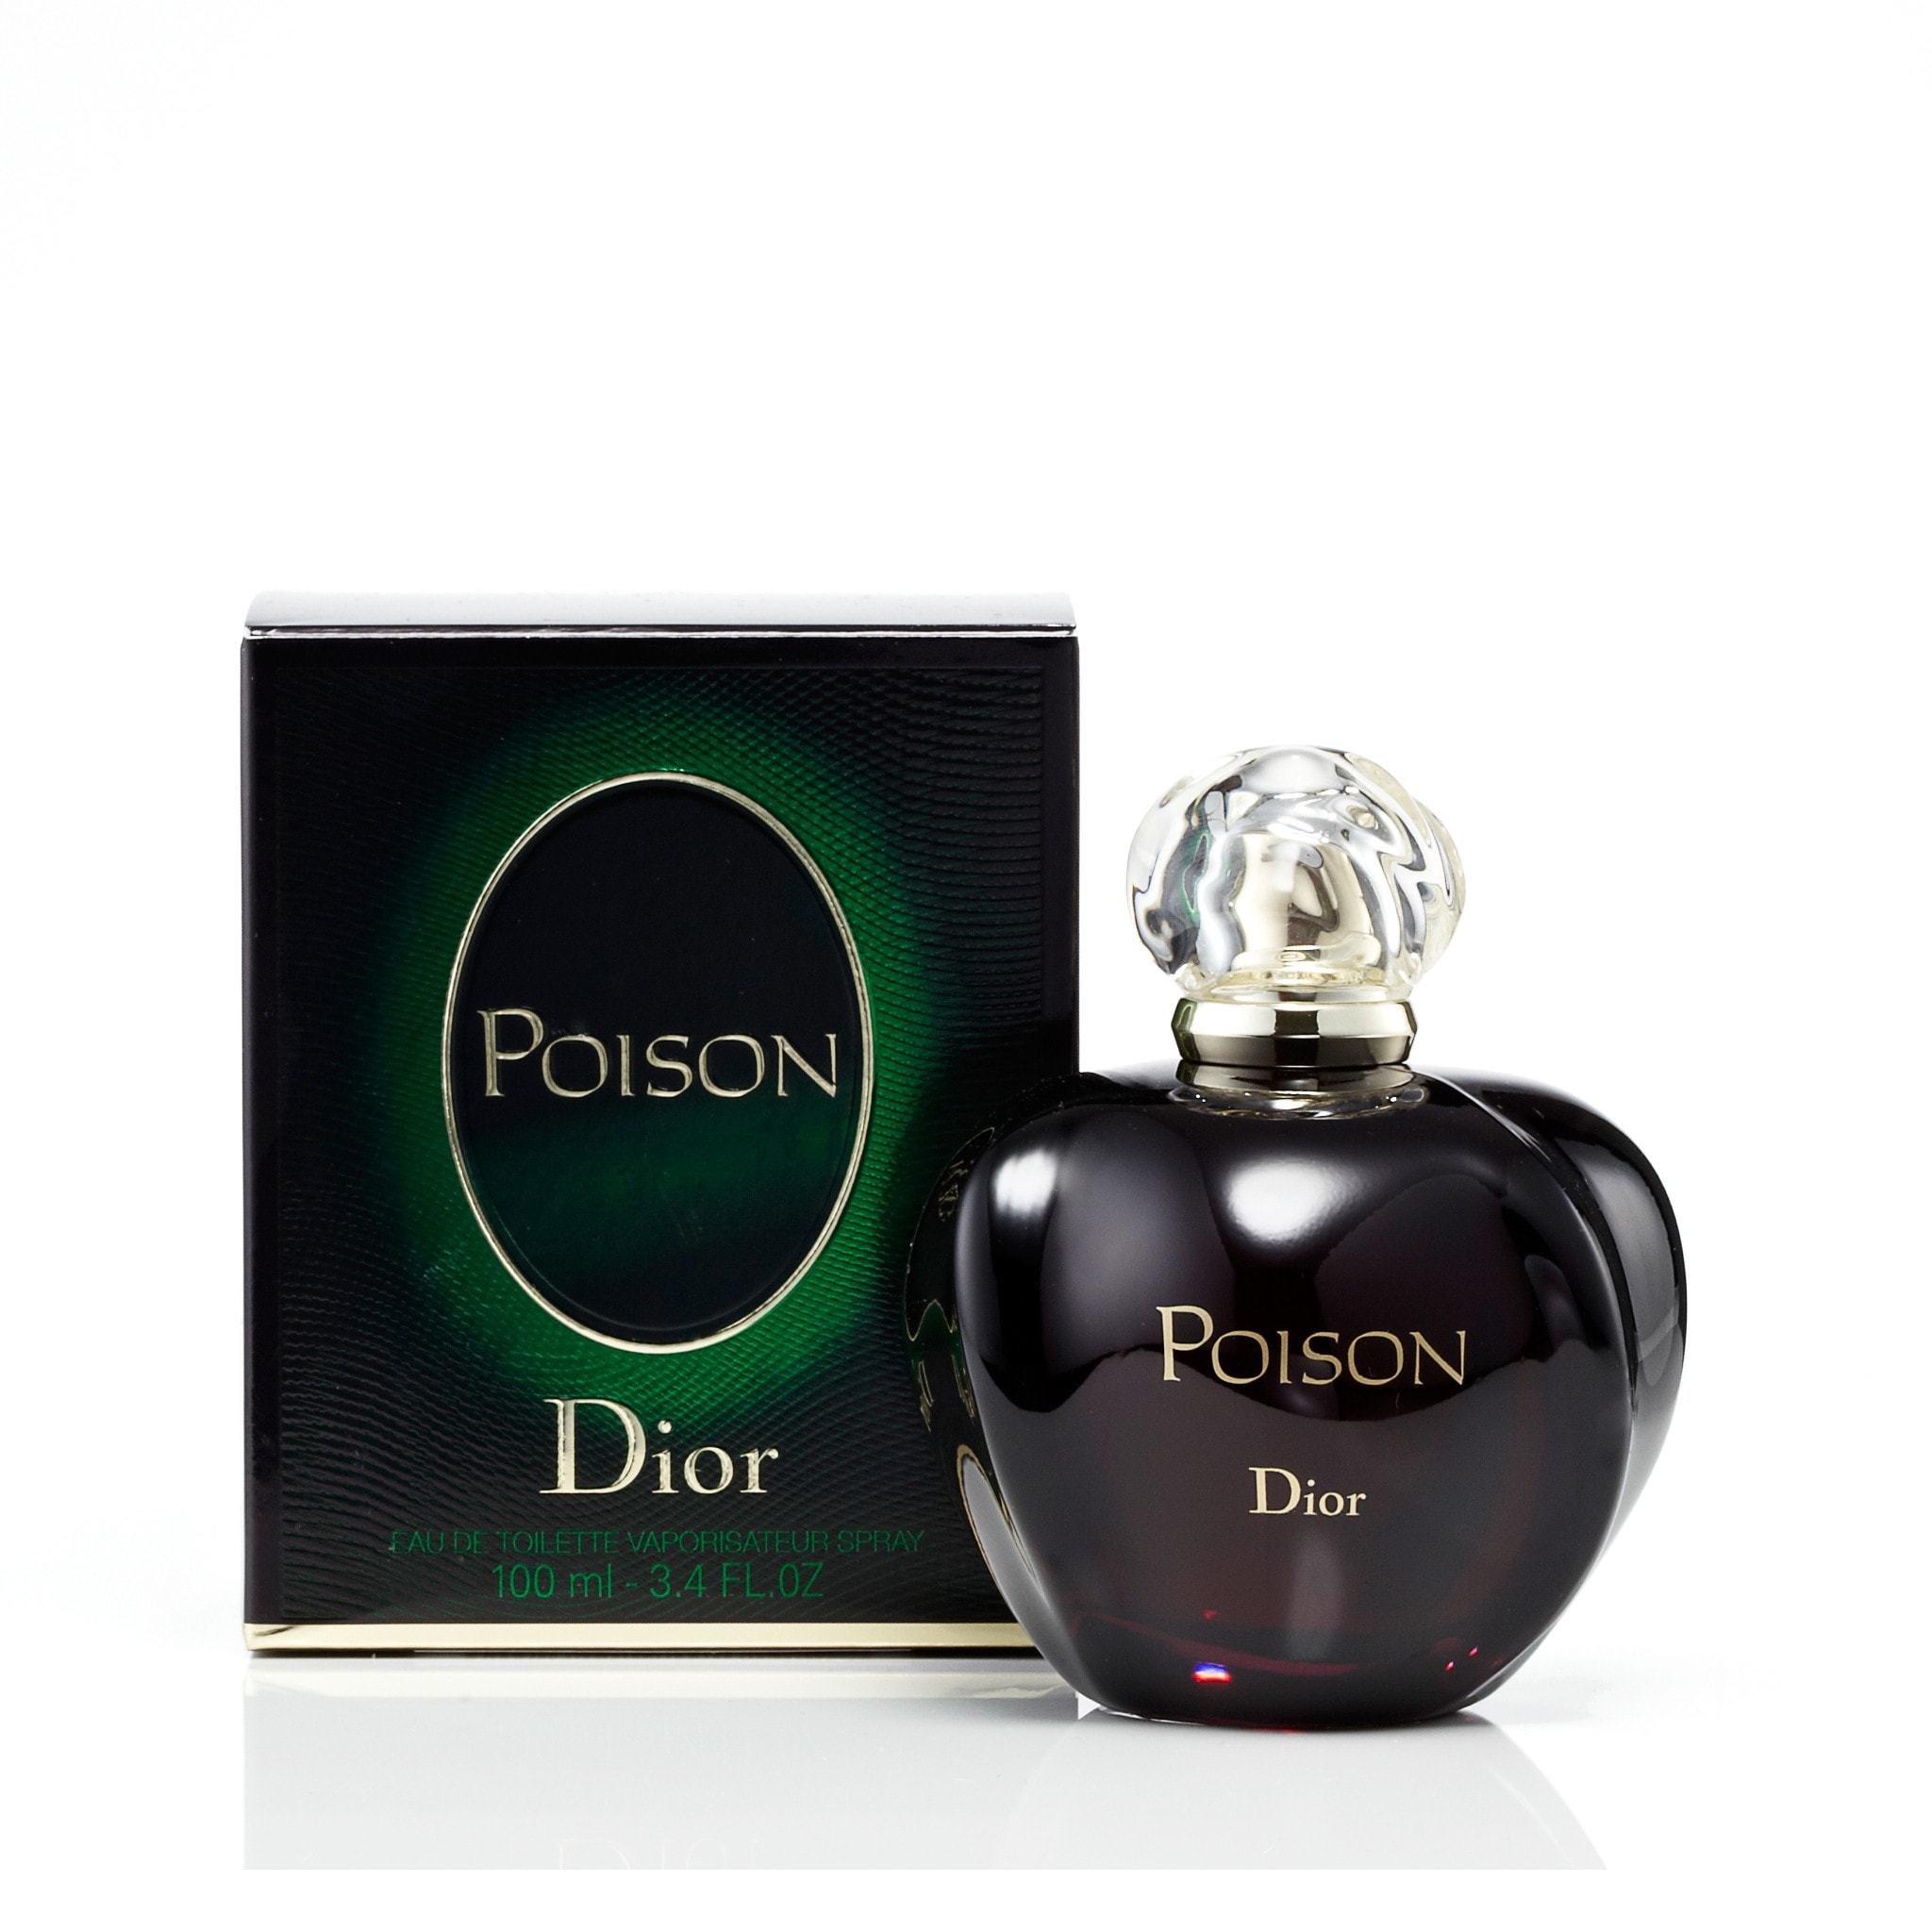 Poison Eau de Toilette Spray for Women by Dior